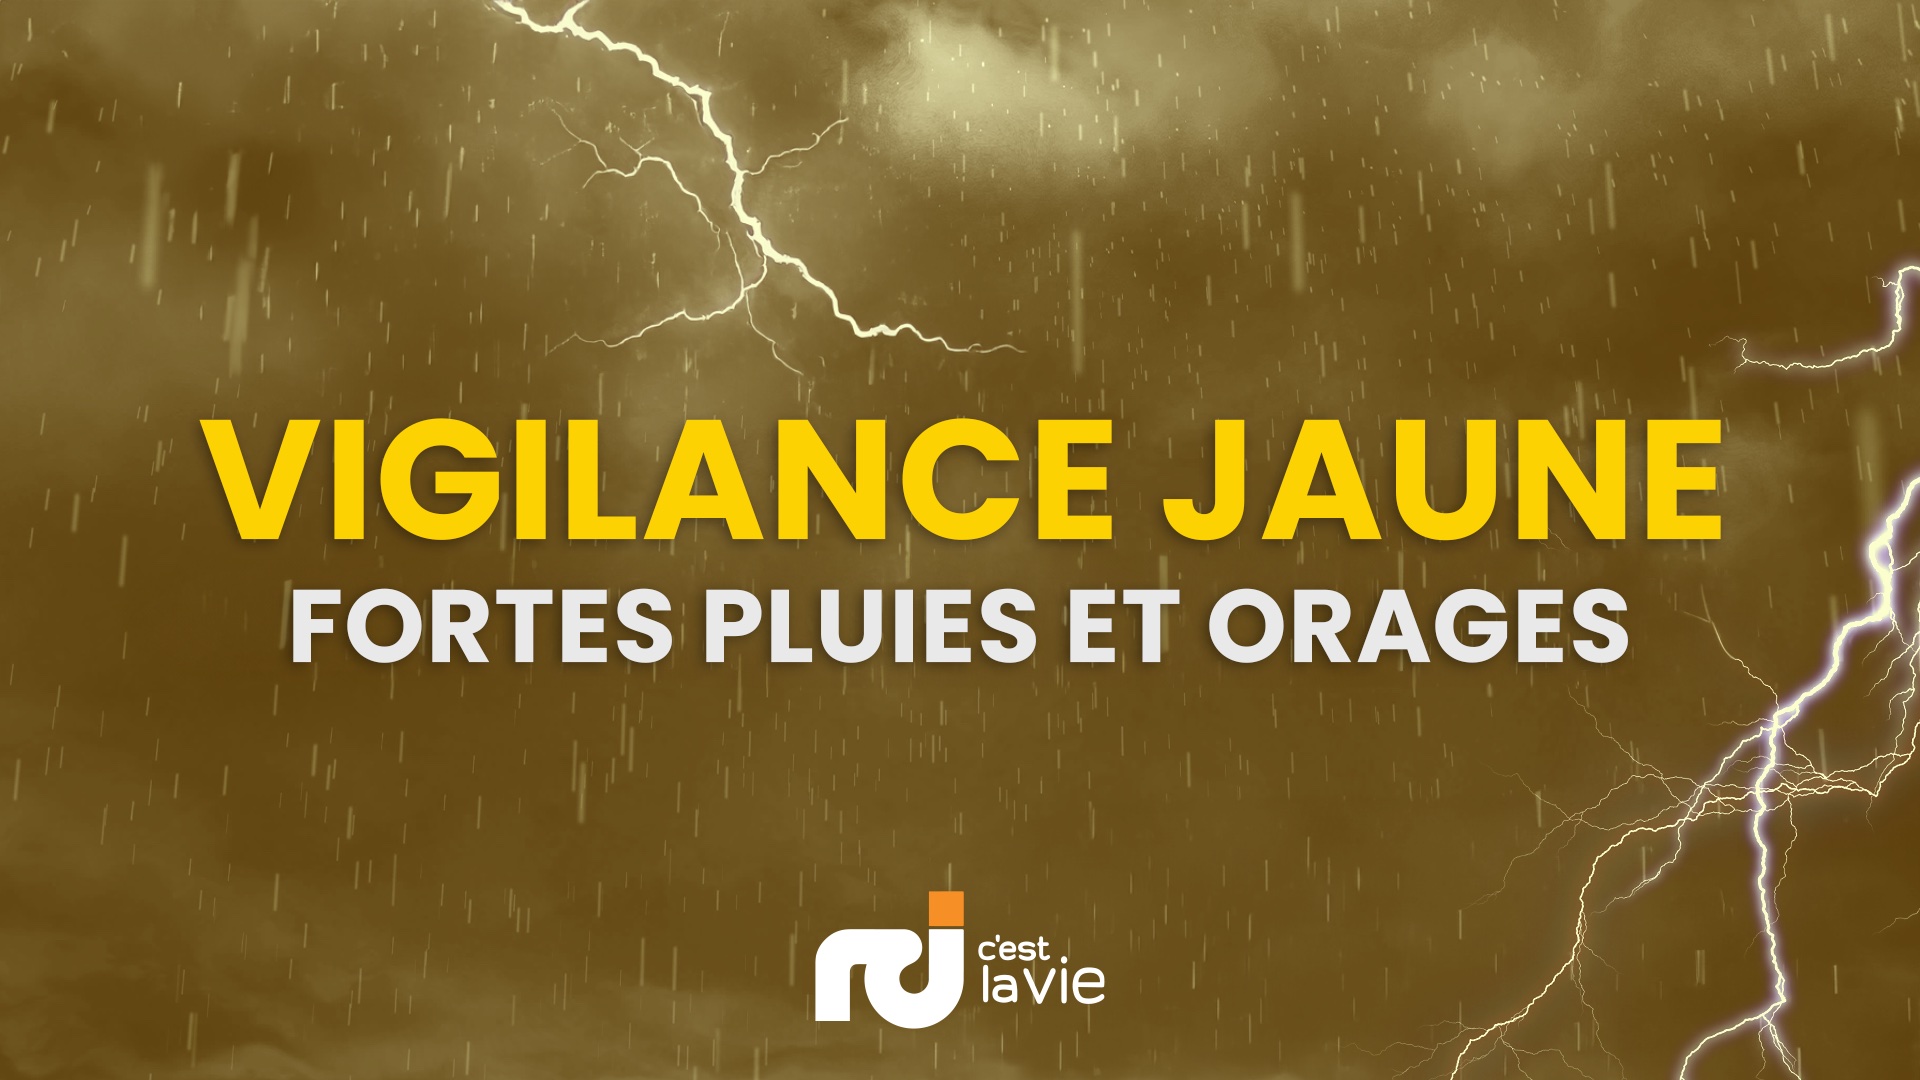     La Guadeloupe en vigilance Jaune pour « fortes pluies et orages »

